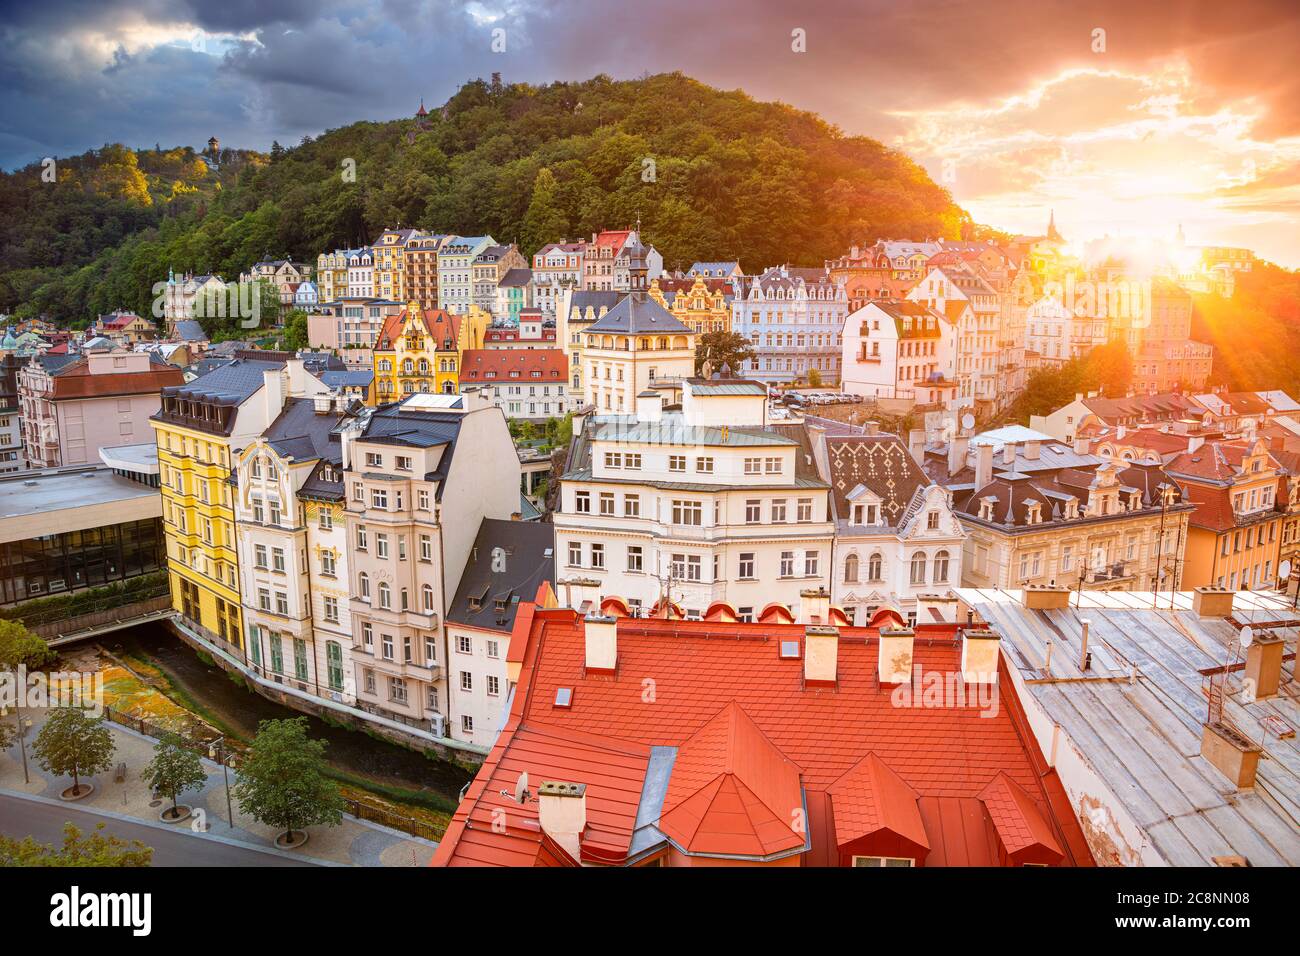 Karlovy Vary, Repubblica Ceca. Immagine aerea di Karlovy Vary (Carlsbad), situato nella Boemia occidentale al bellissimo tramonto. Foto Stock